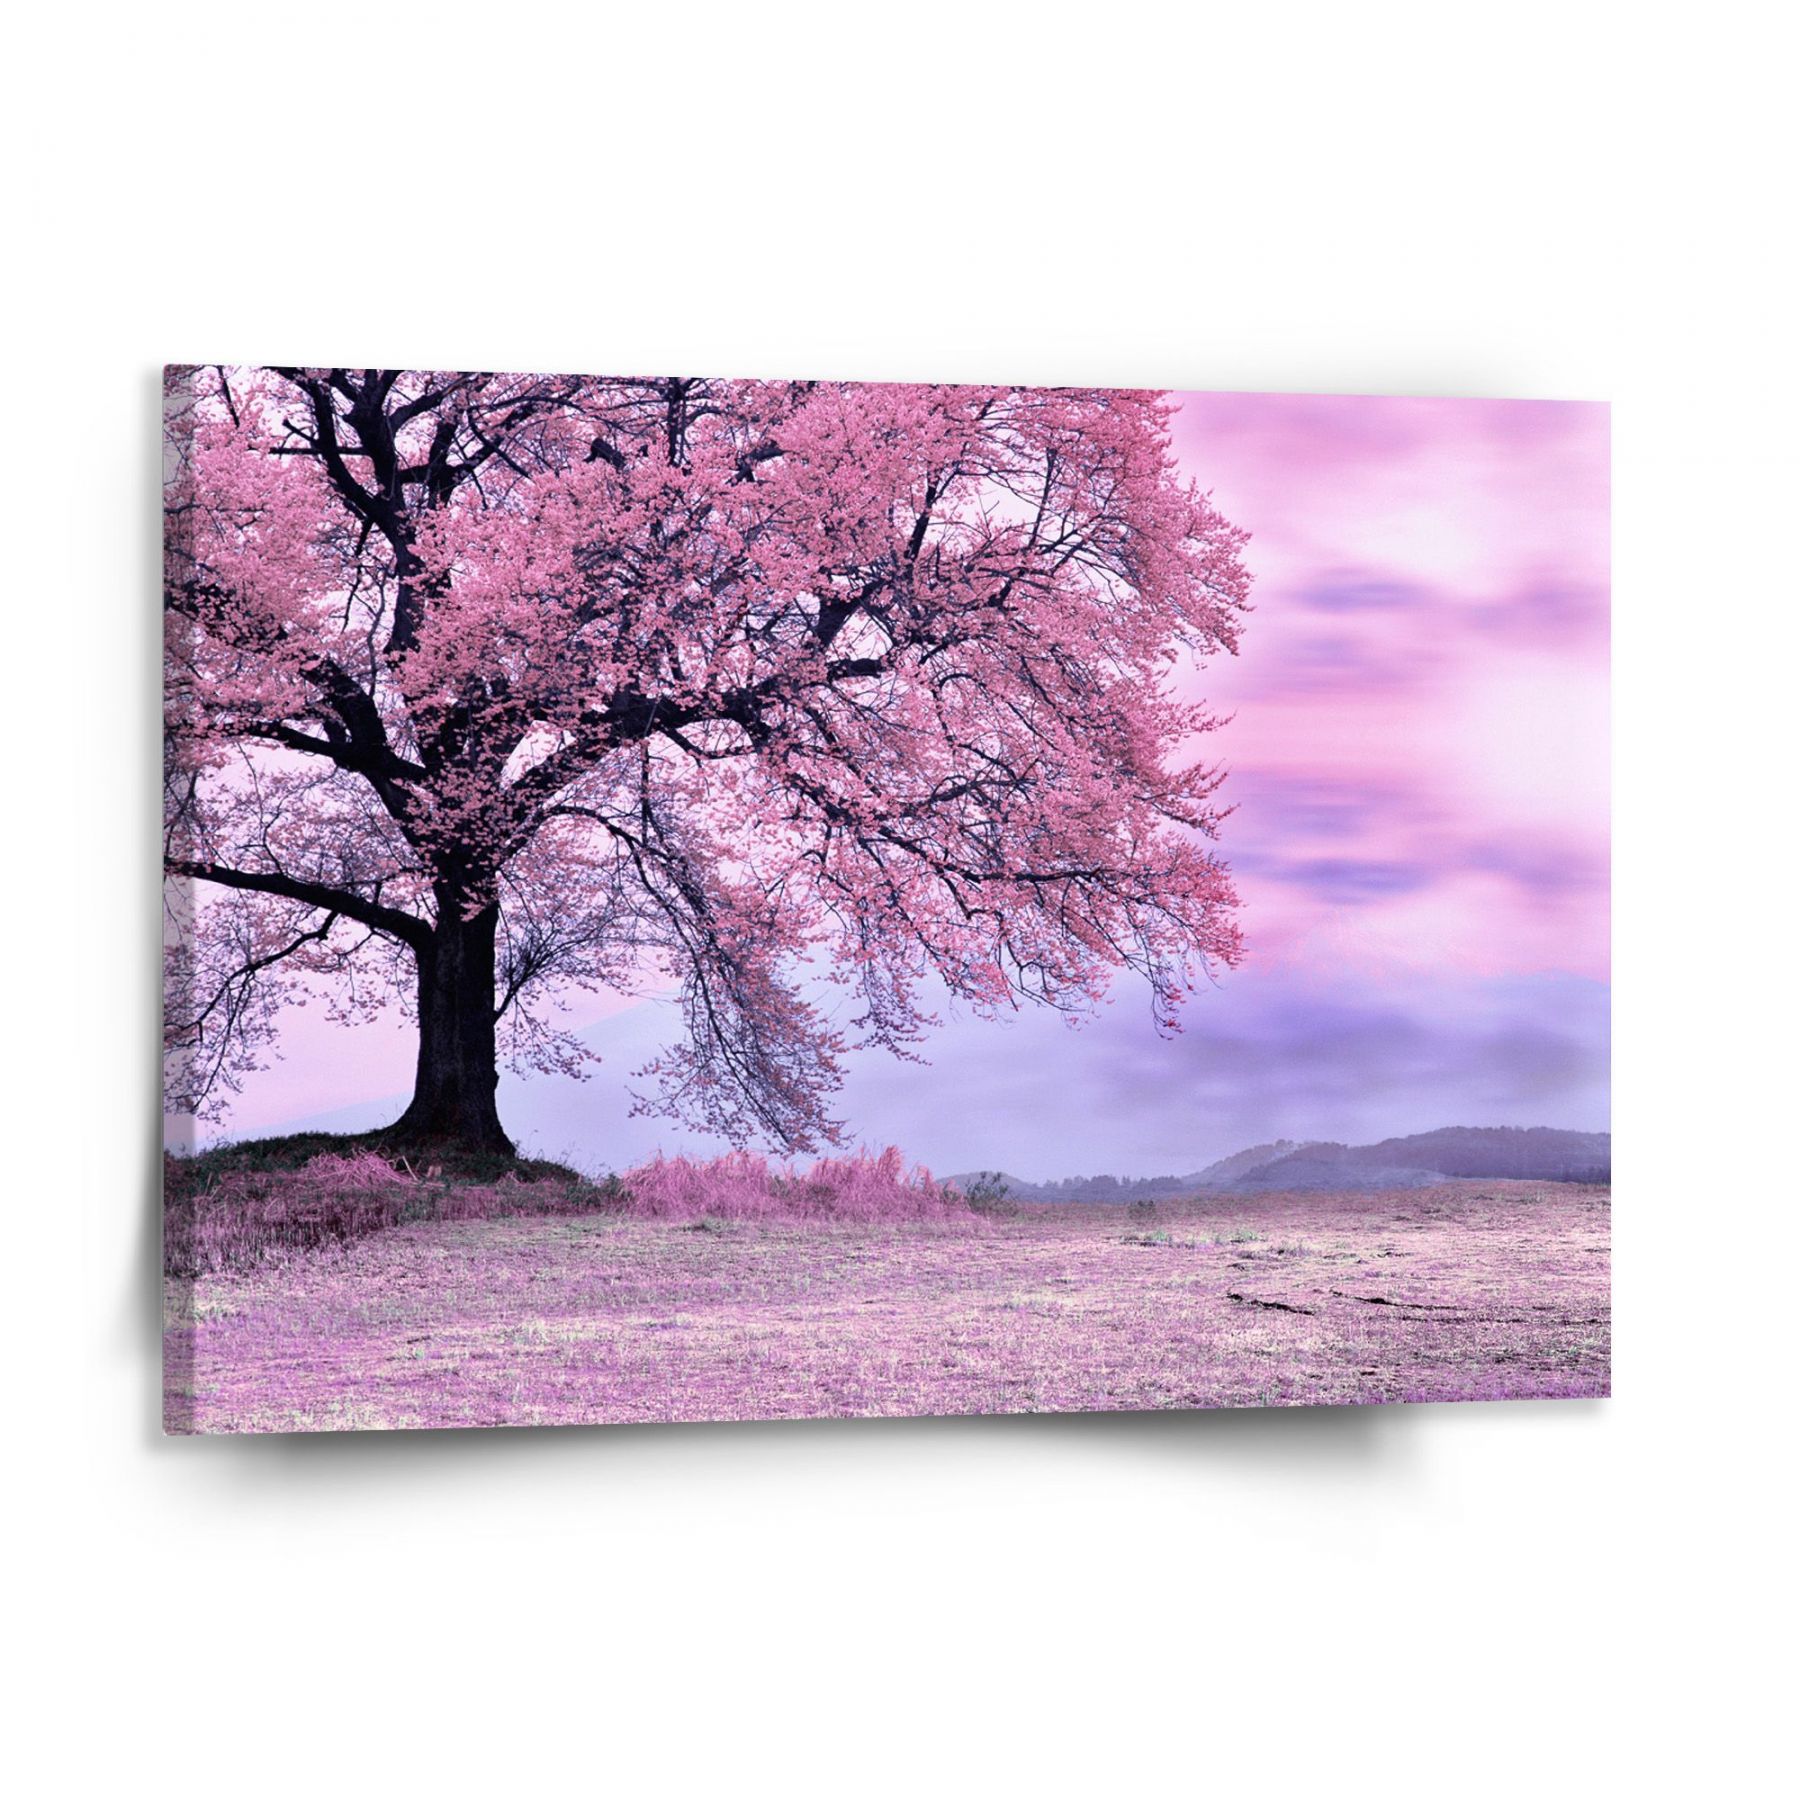 Obraz SABLIO - Růžový strom 150x110 cm - E-shop Sablo s.r.o.